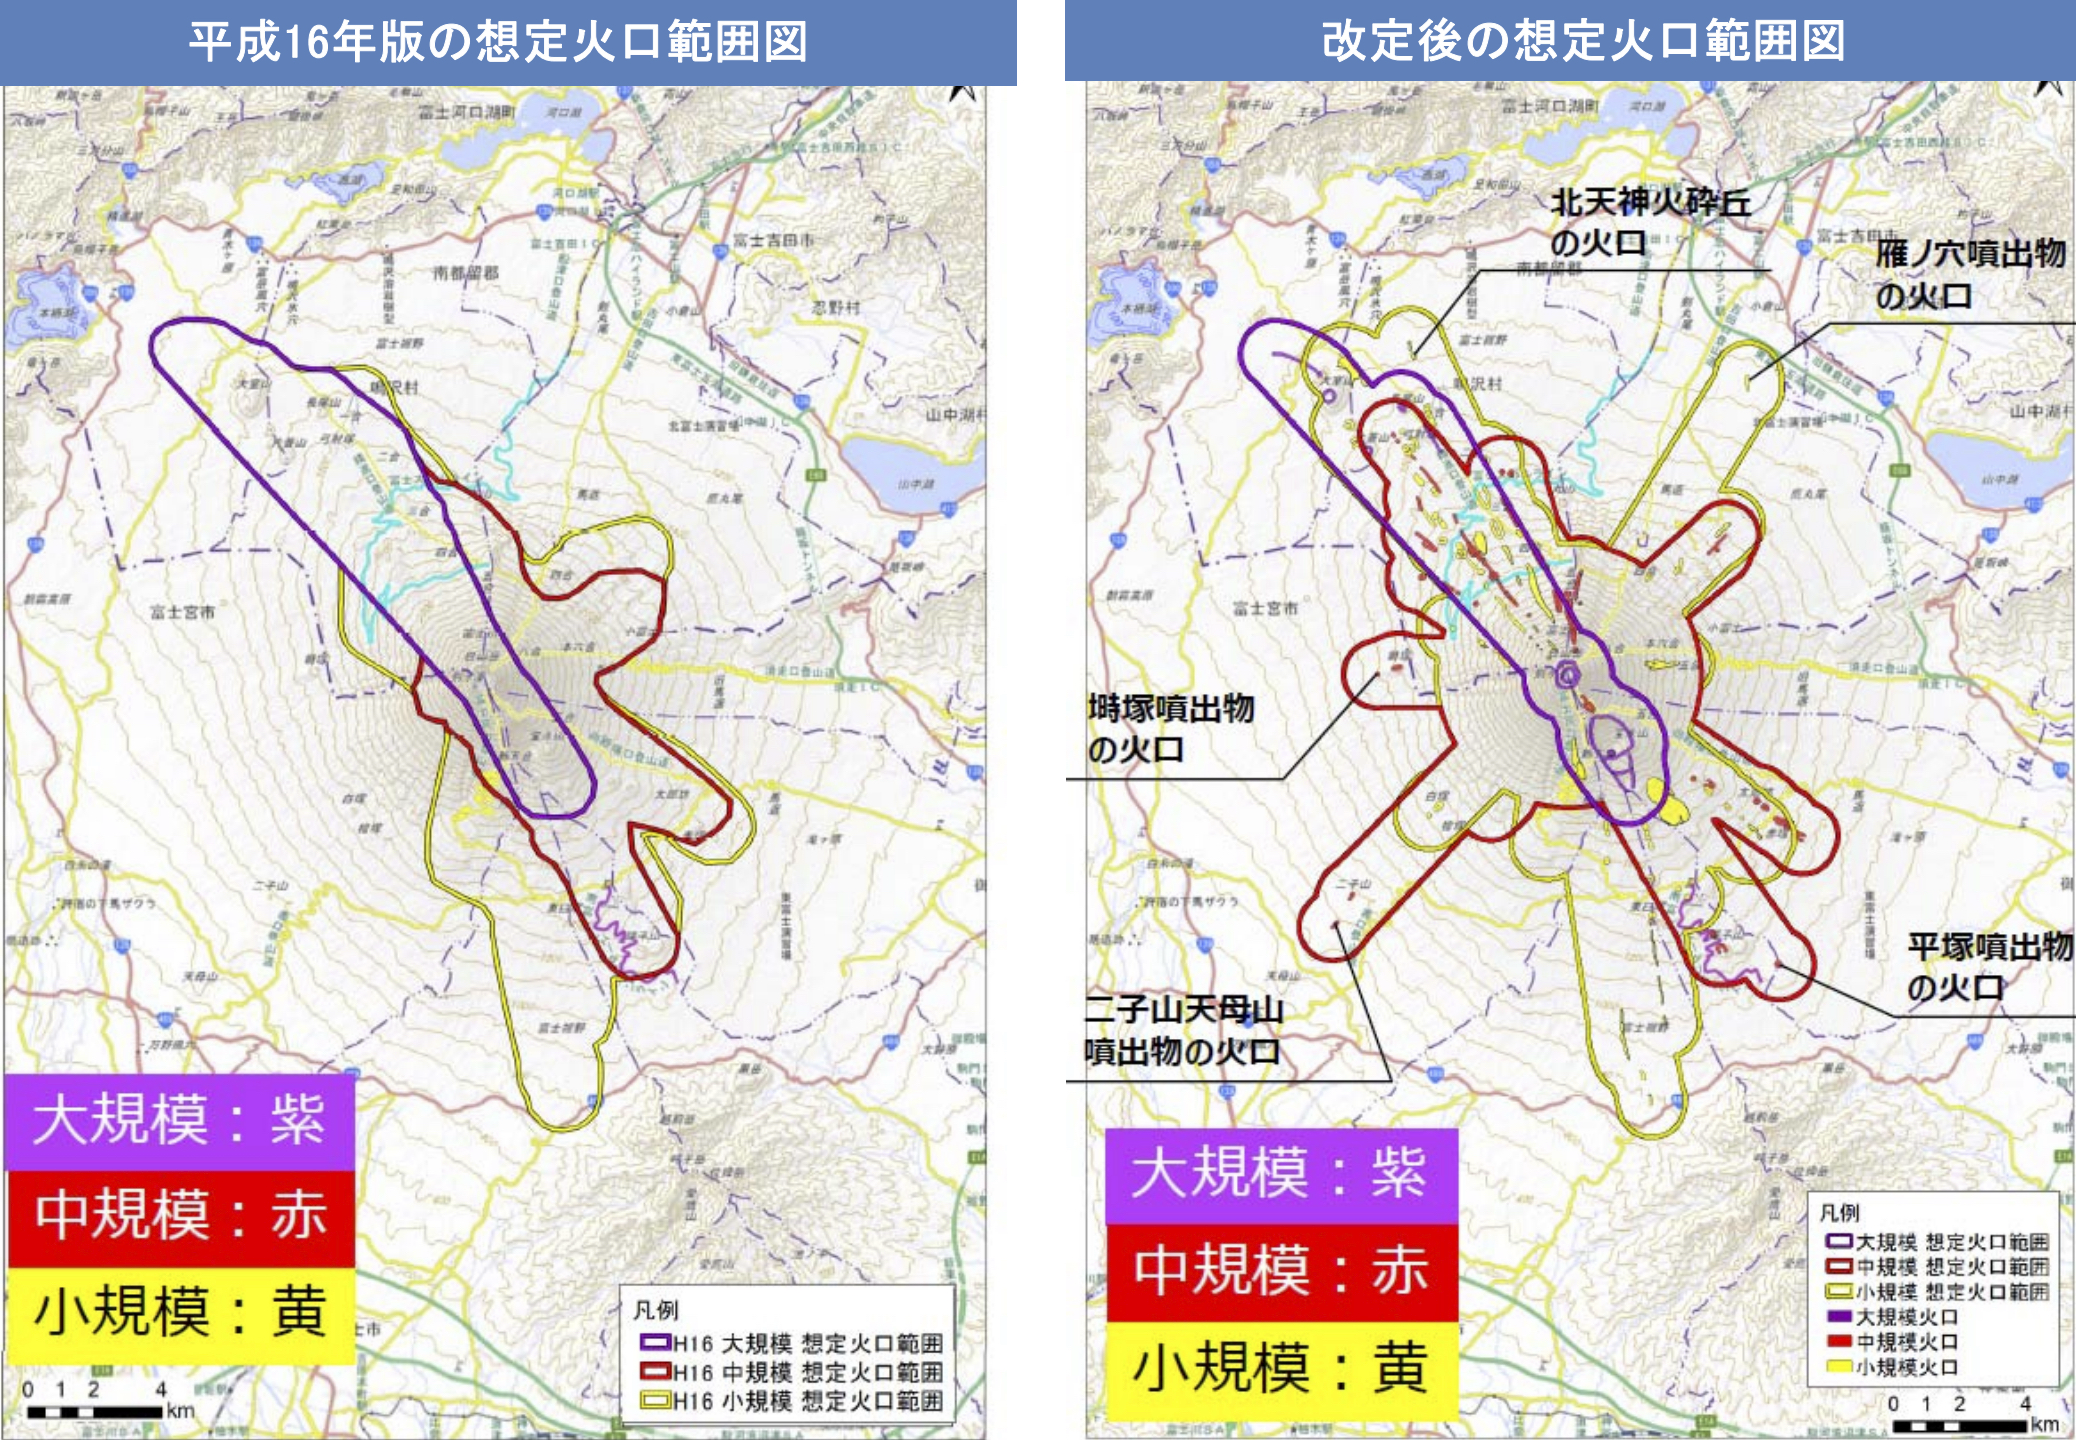 Neuausgabe der Katastrophenschutzkarte des Fuji-san. Links die alte, rechts die neue Fassung.